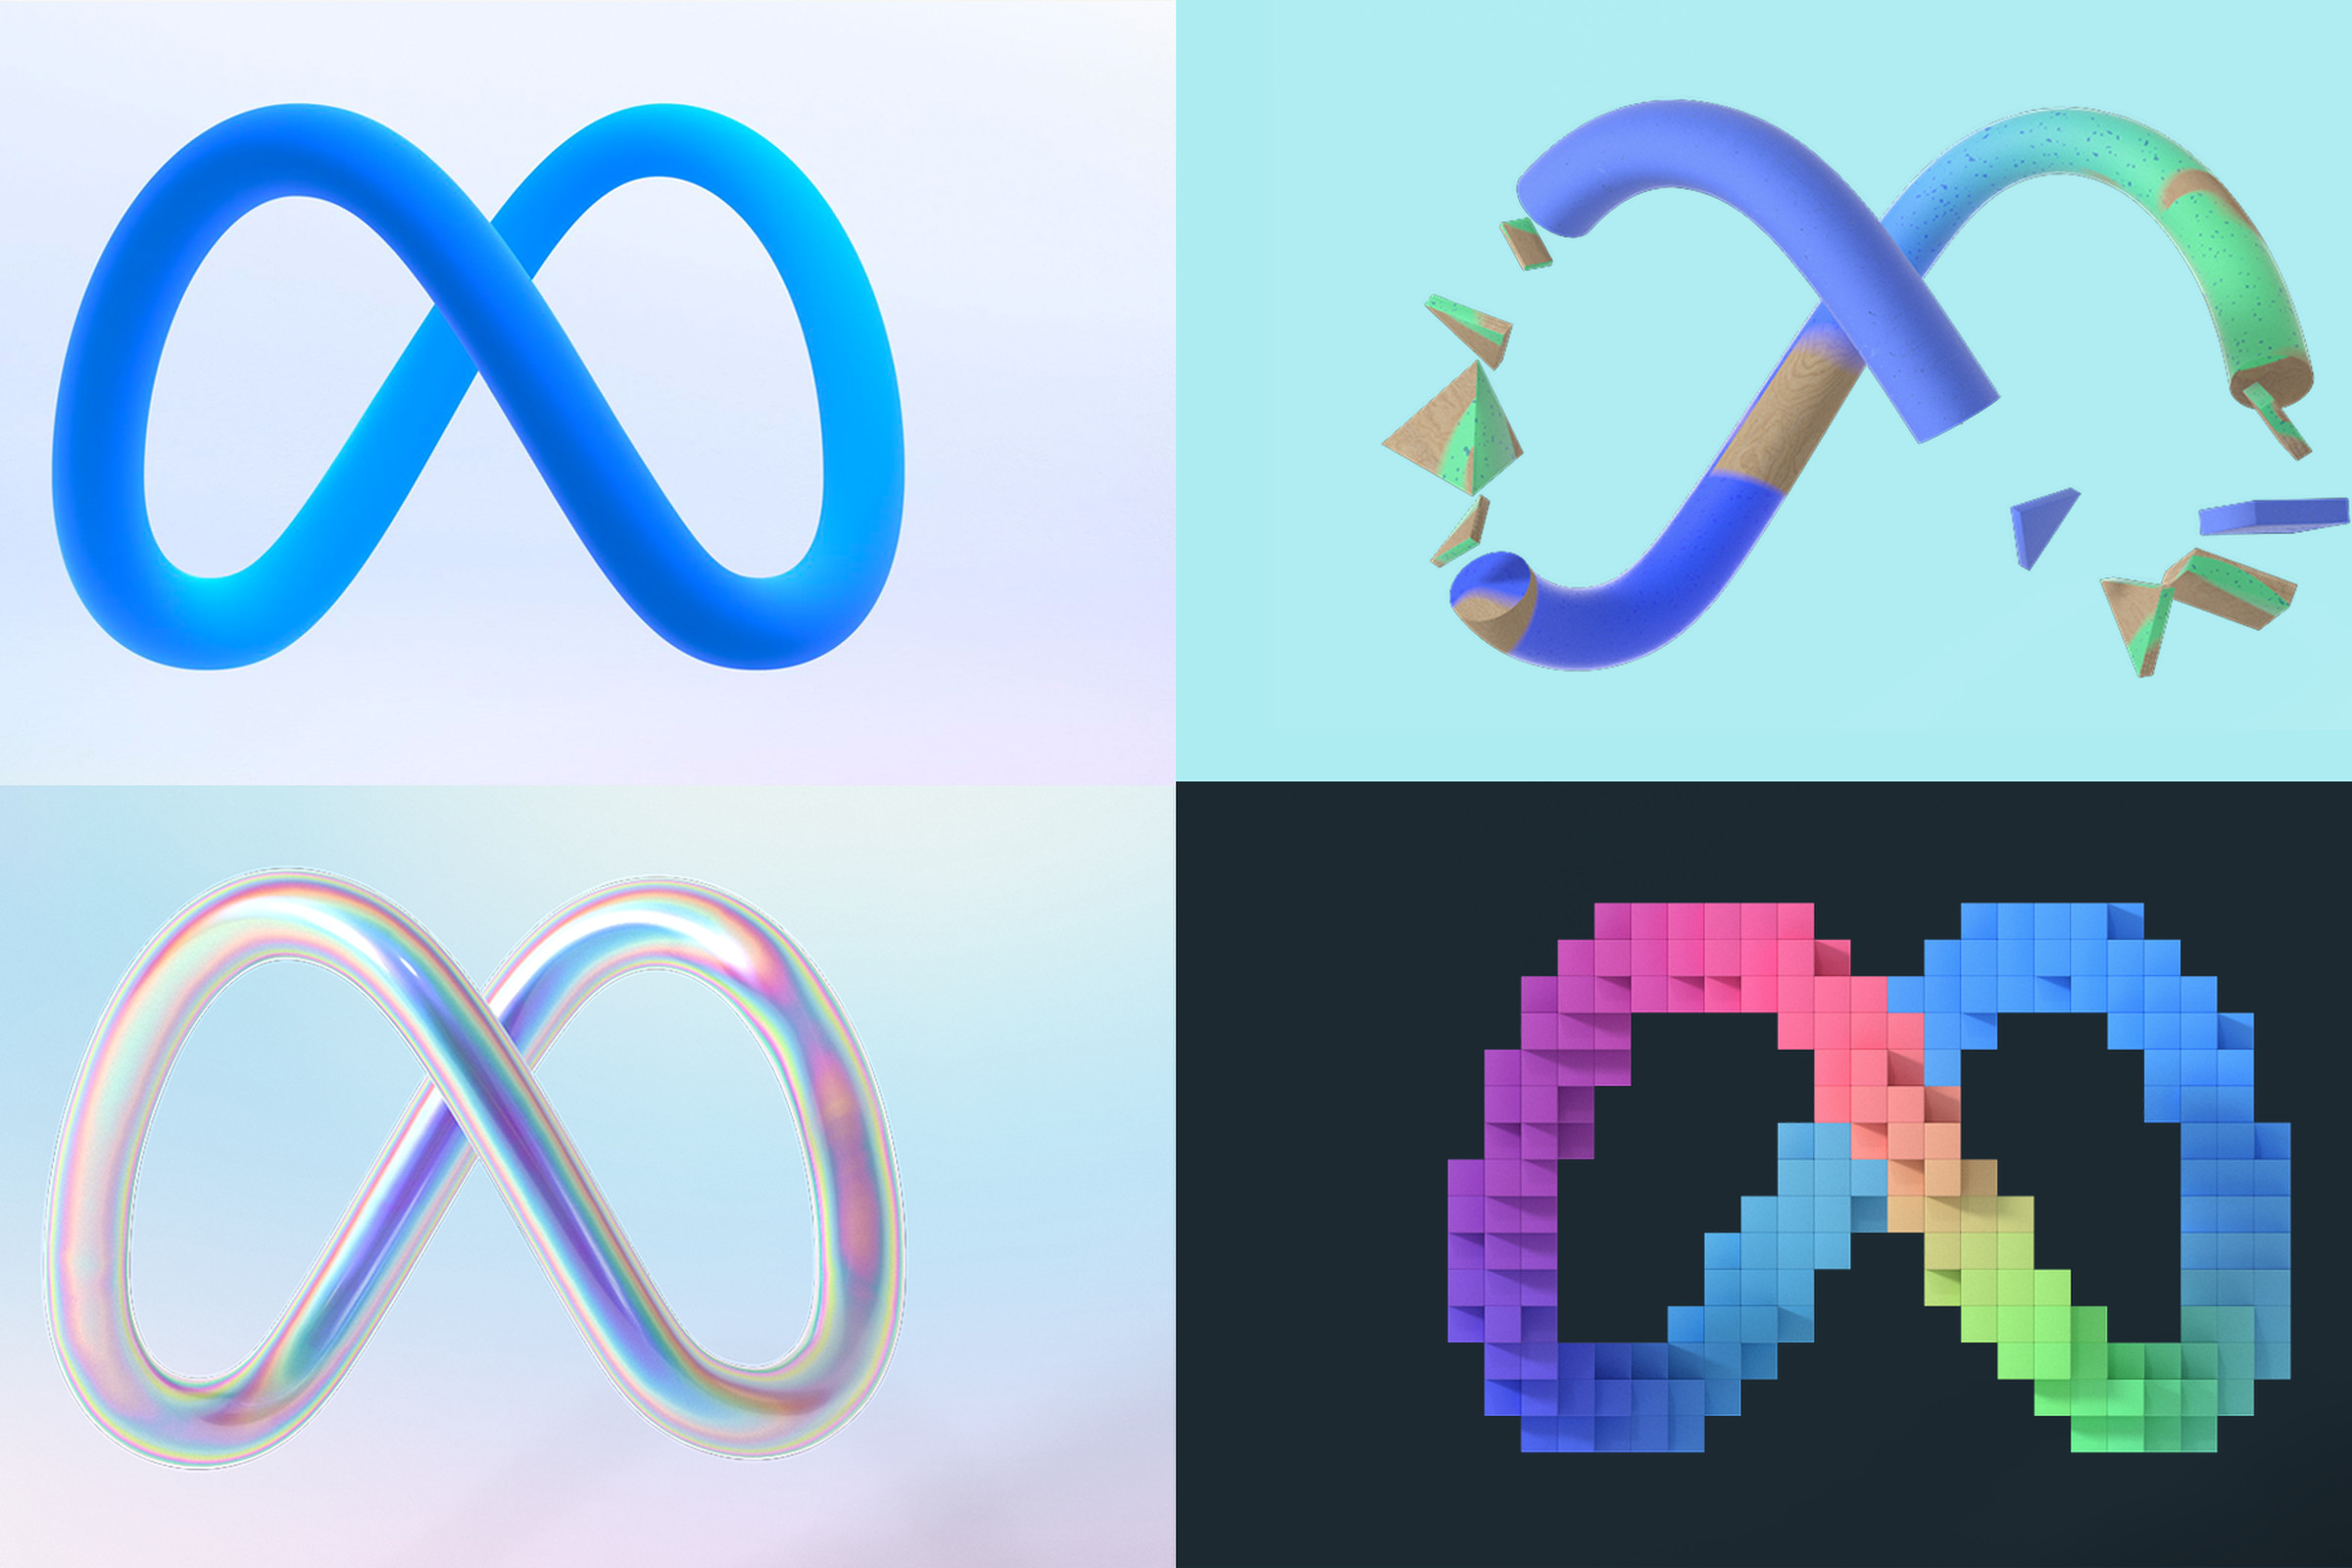 A collage of Meta logos.